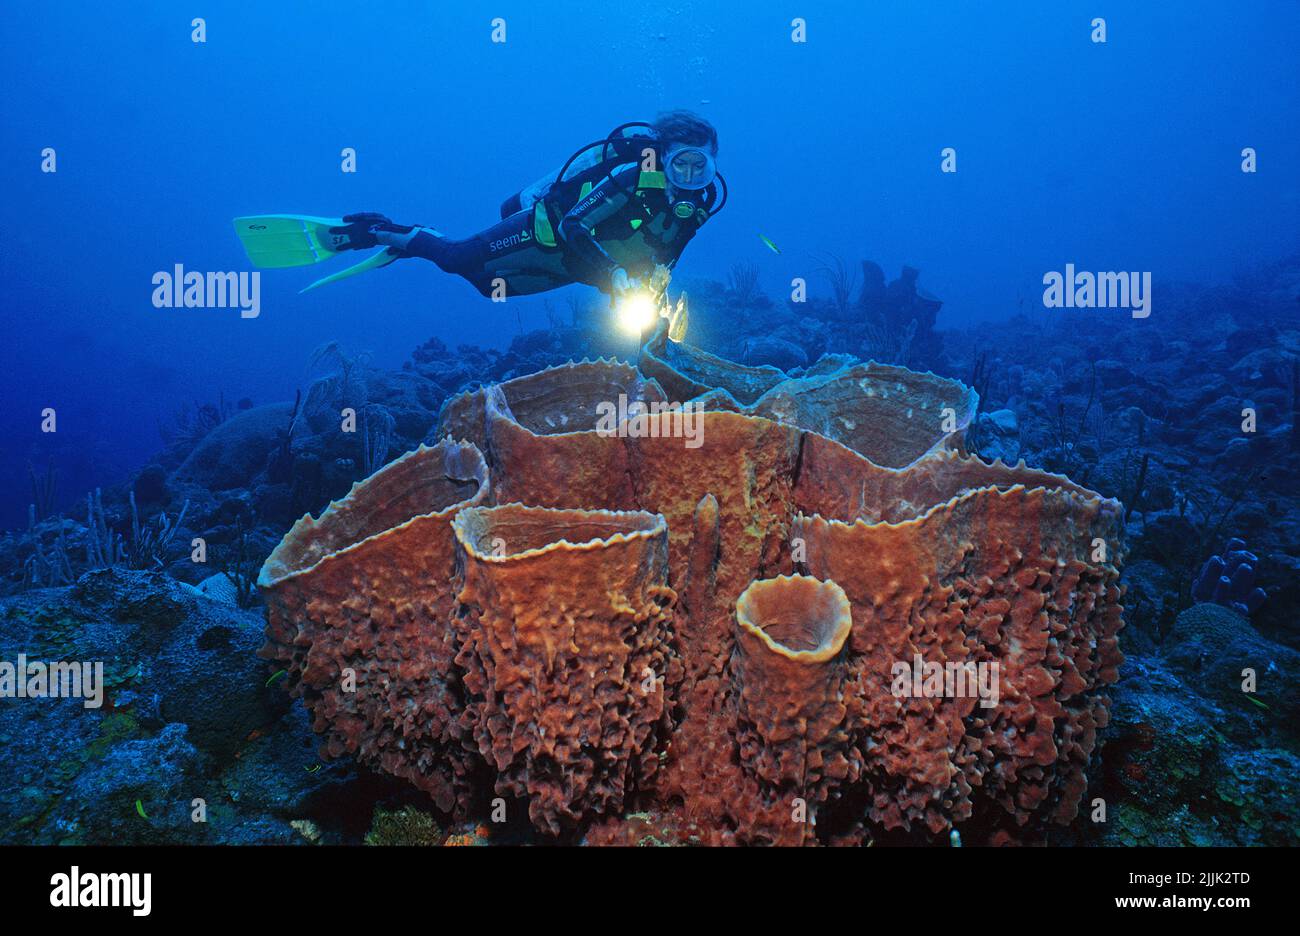 Le plongeur de plongée regarde les grandes éponges de barrel (Xestospongia testudinaria) dans un récif de corail des caraïbes, Saba, Antilles néerlandaises, Caraïbes Banque D'Images